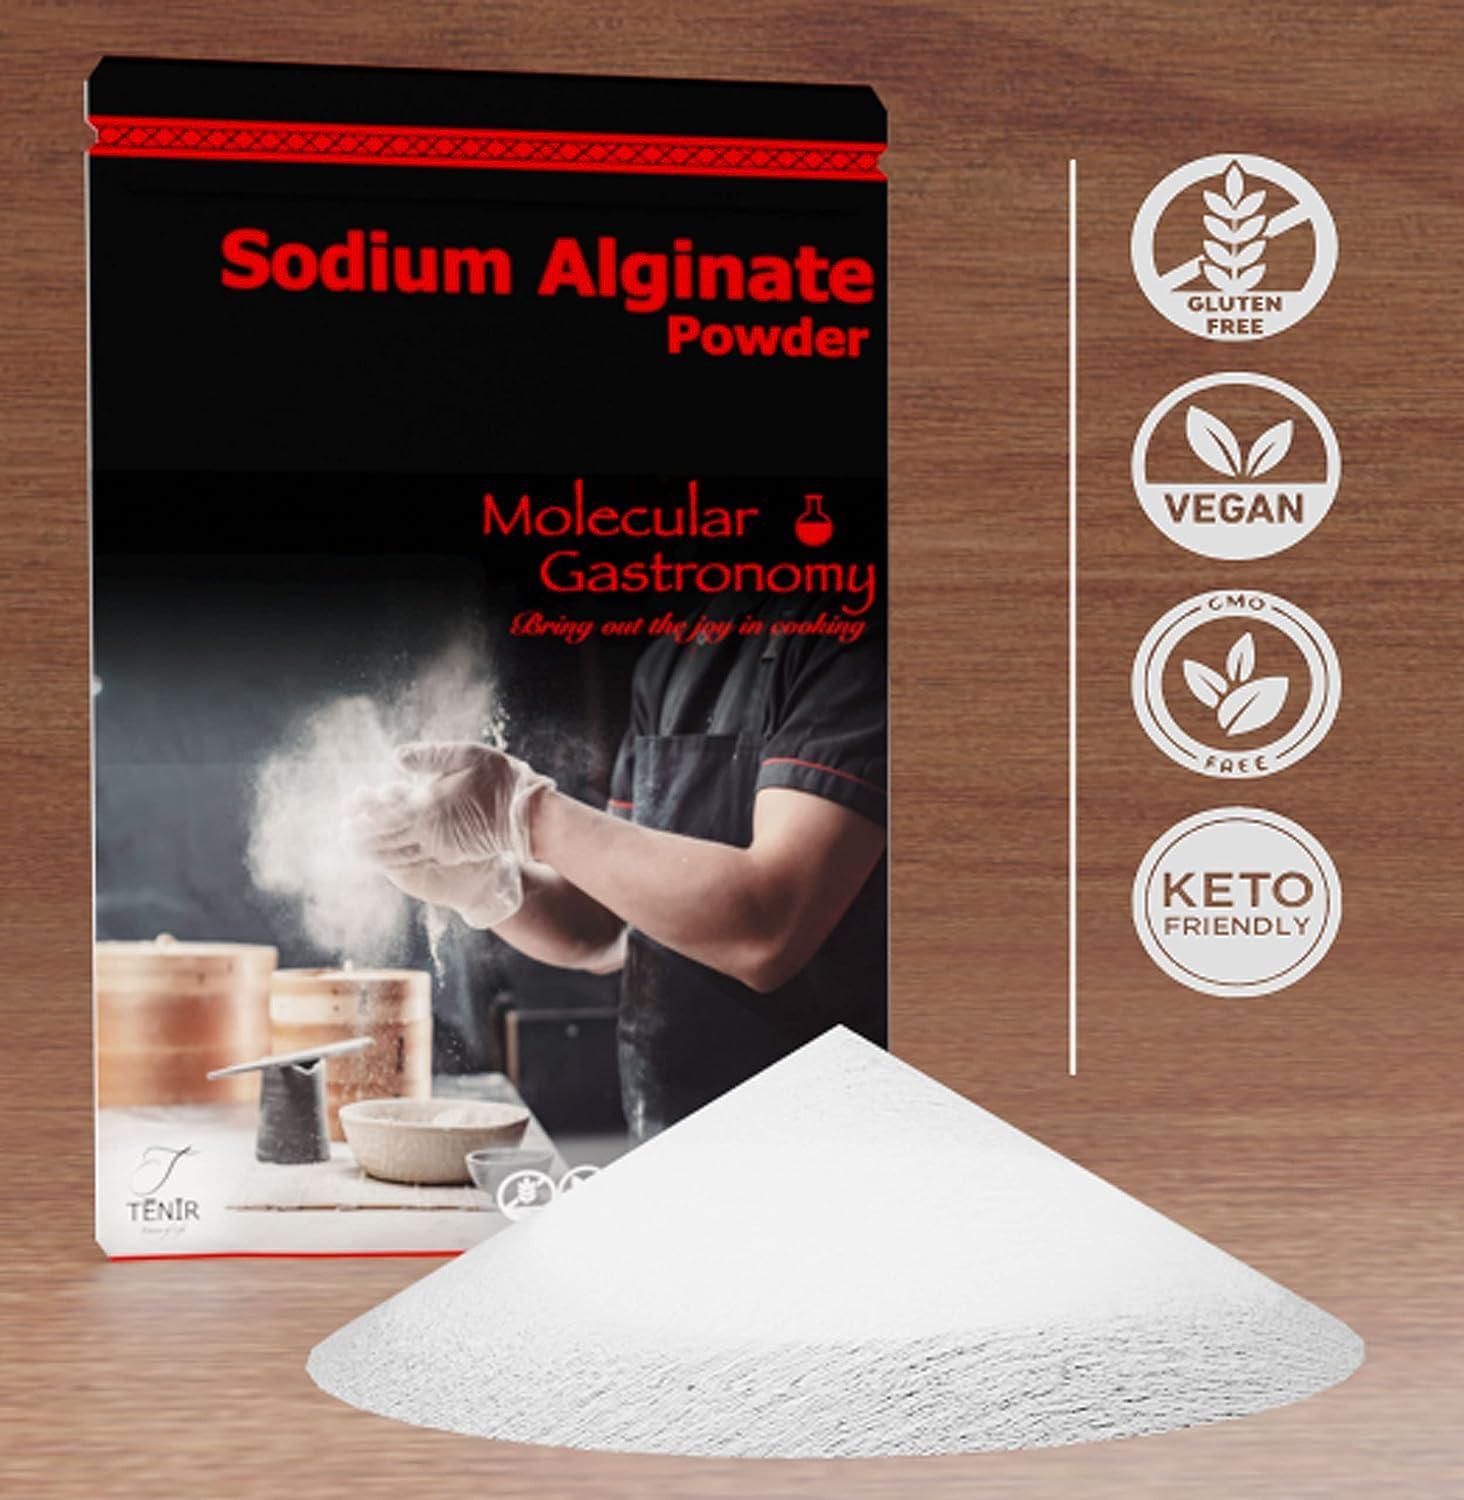 500g Sodium Alginate E401- Food Grade Molecular Gastronomy